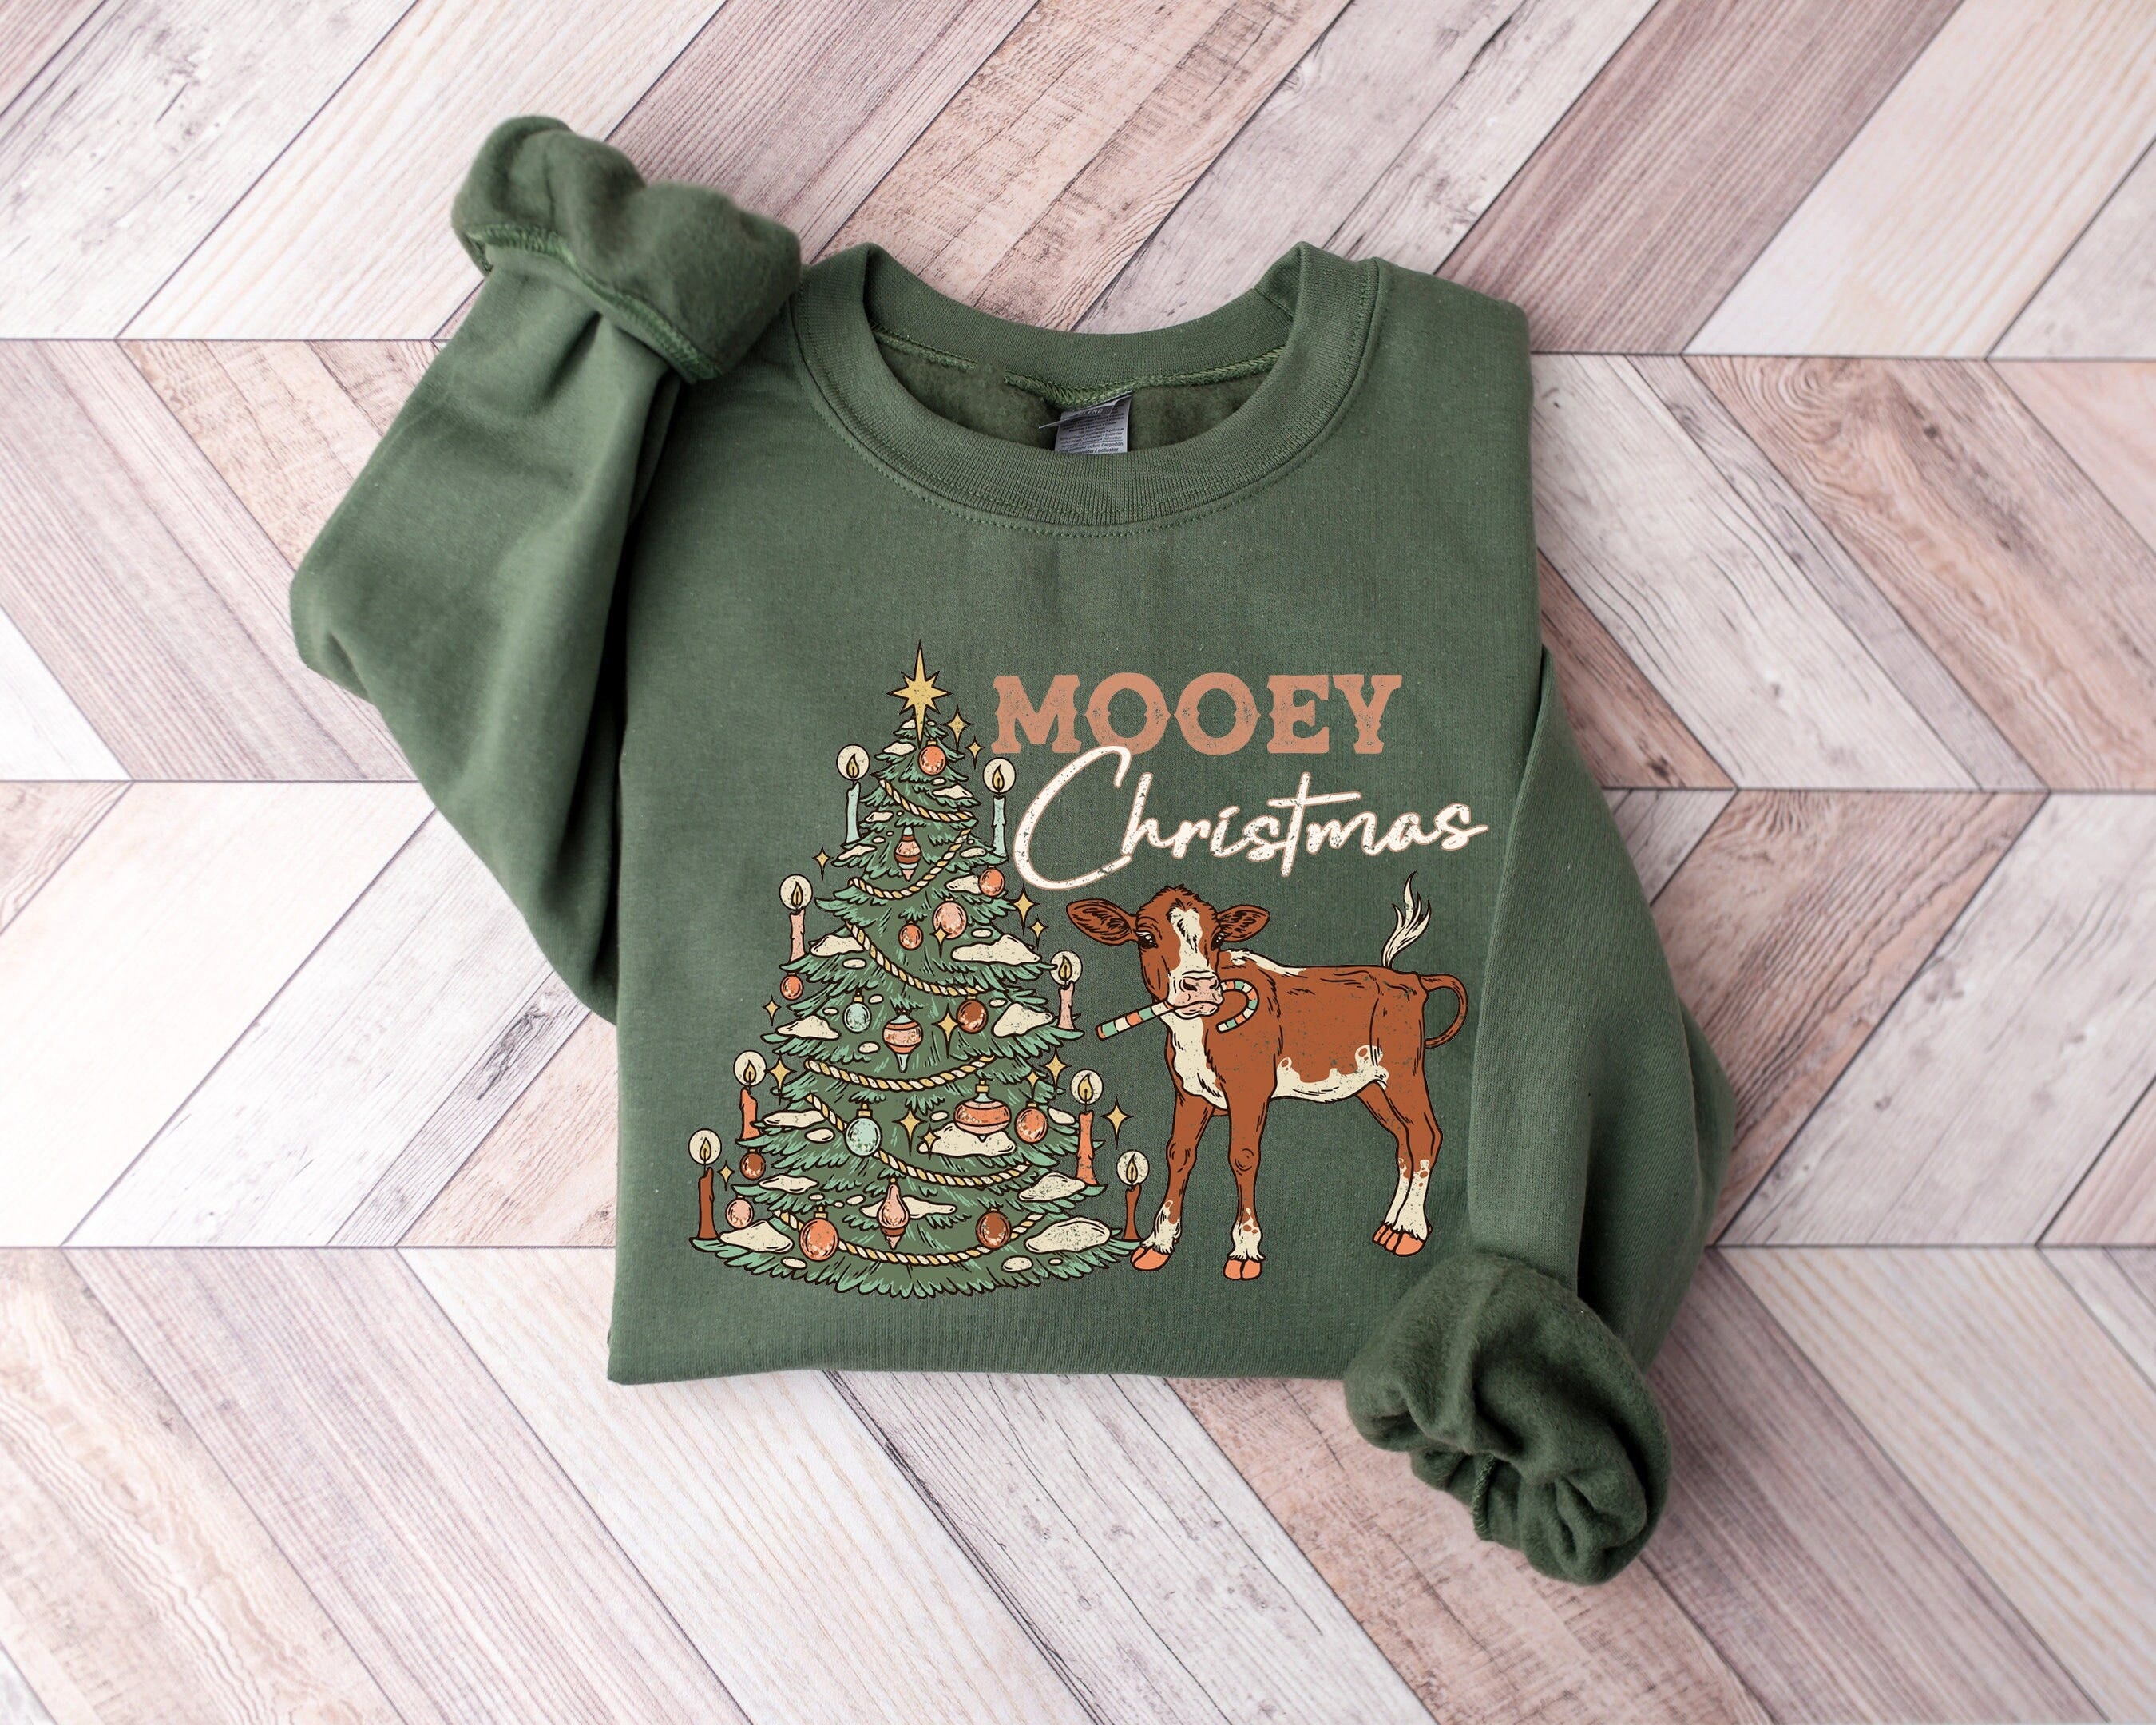 Mooey Christmas Sweatshirt, Western Christmas Sweater, Christmas Heifer Shirt, Xmas Cow Sweatshirt, Christmas Adult Crewneck Sweater